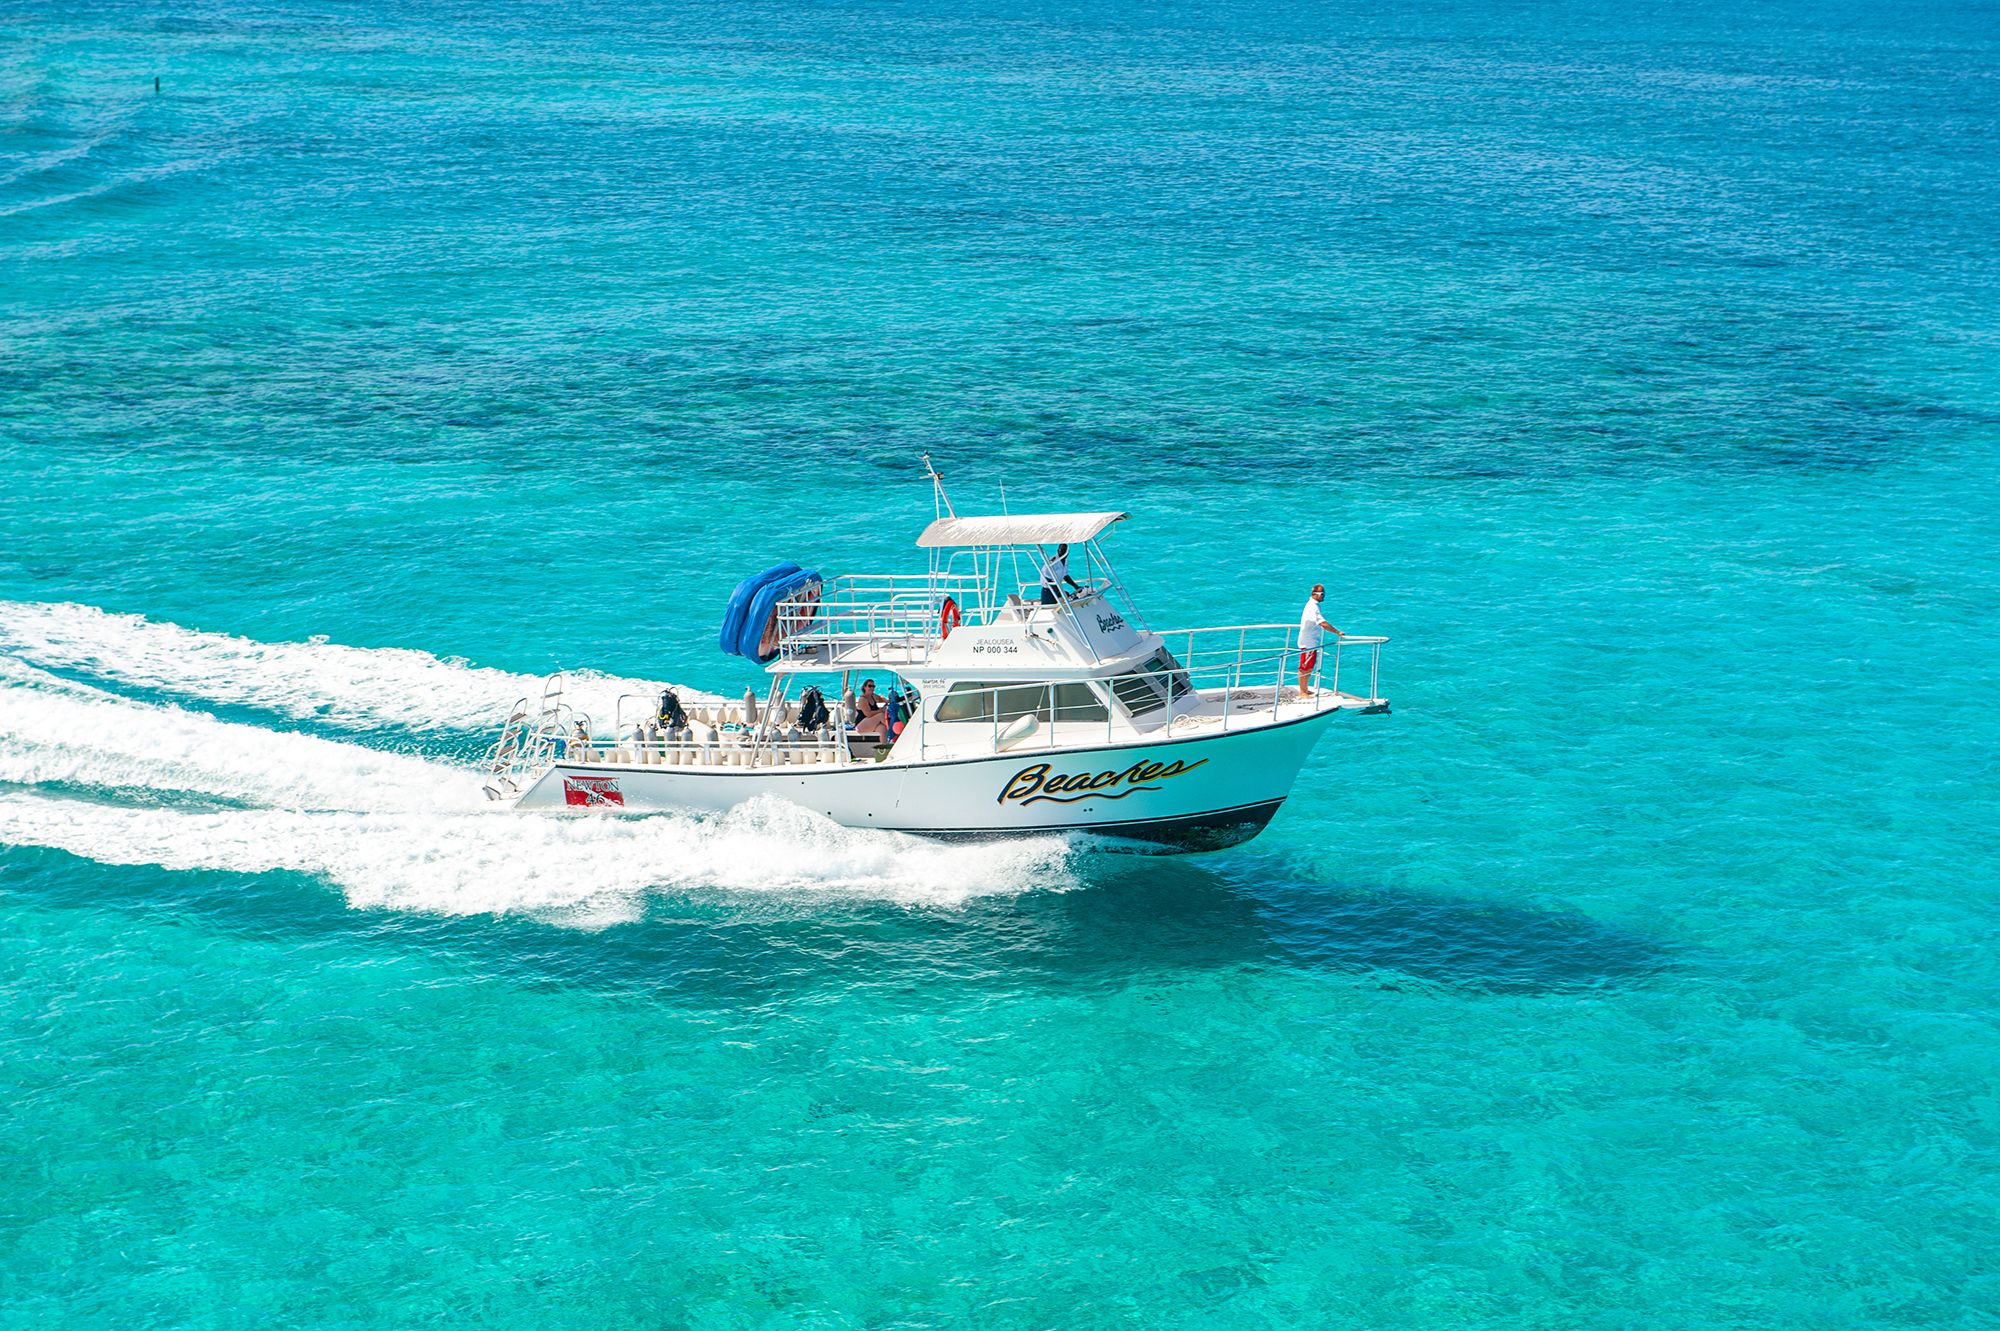 Beaches Turks Caicos Aerial Fishing Charter